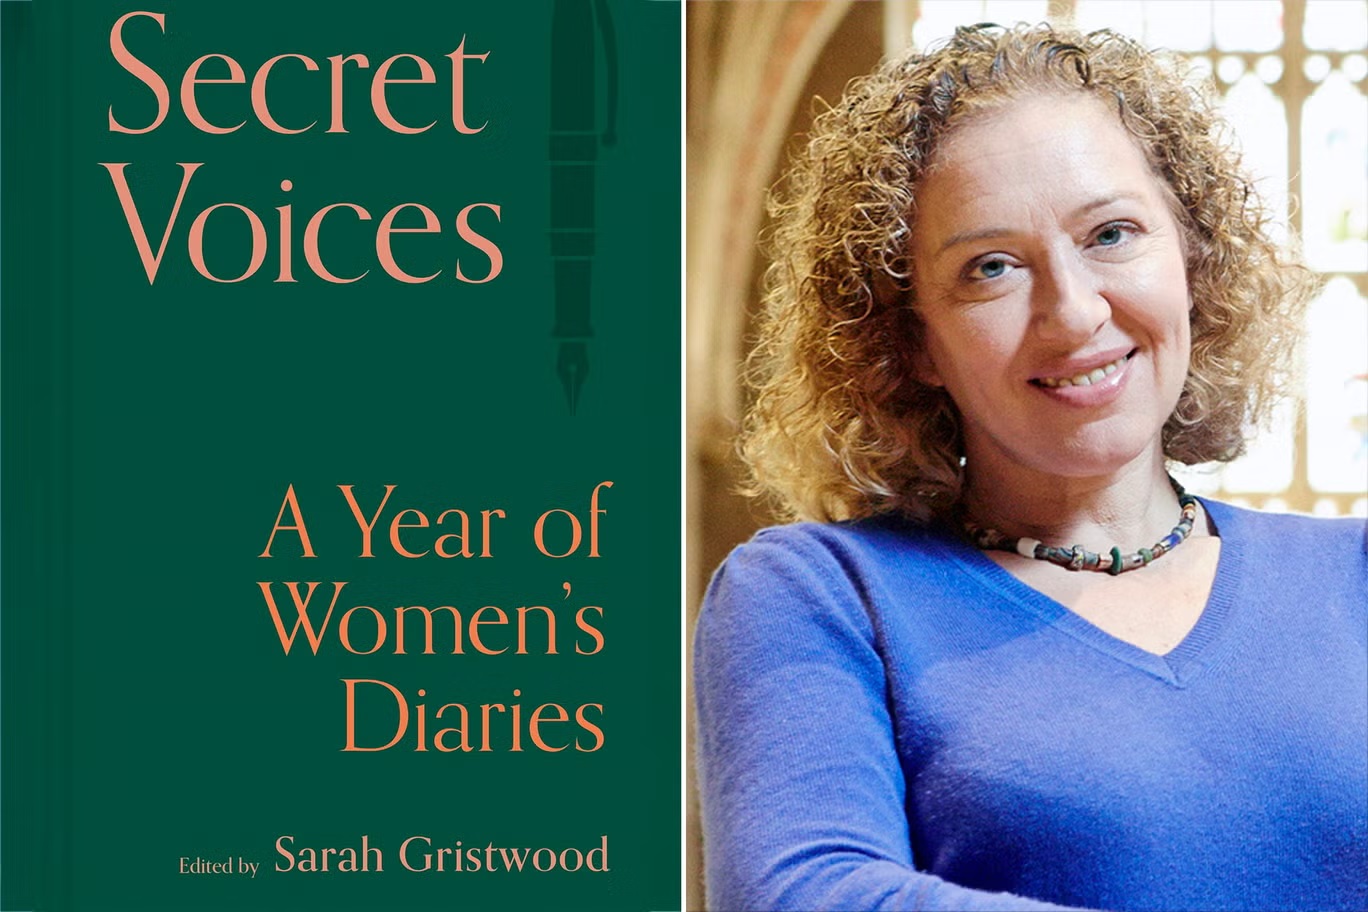 "أصوات سرية" دليل مثير للاهتمام وسهل القراءة للغاية لتجارب النساء على مدى القرون الأربعة الماضية (باتسفورد)